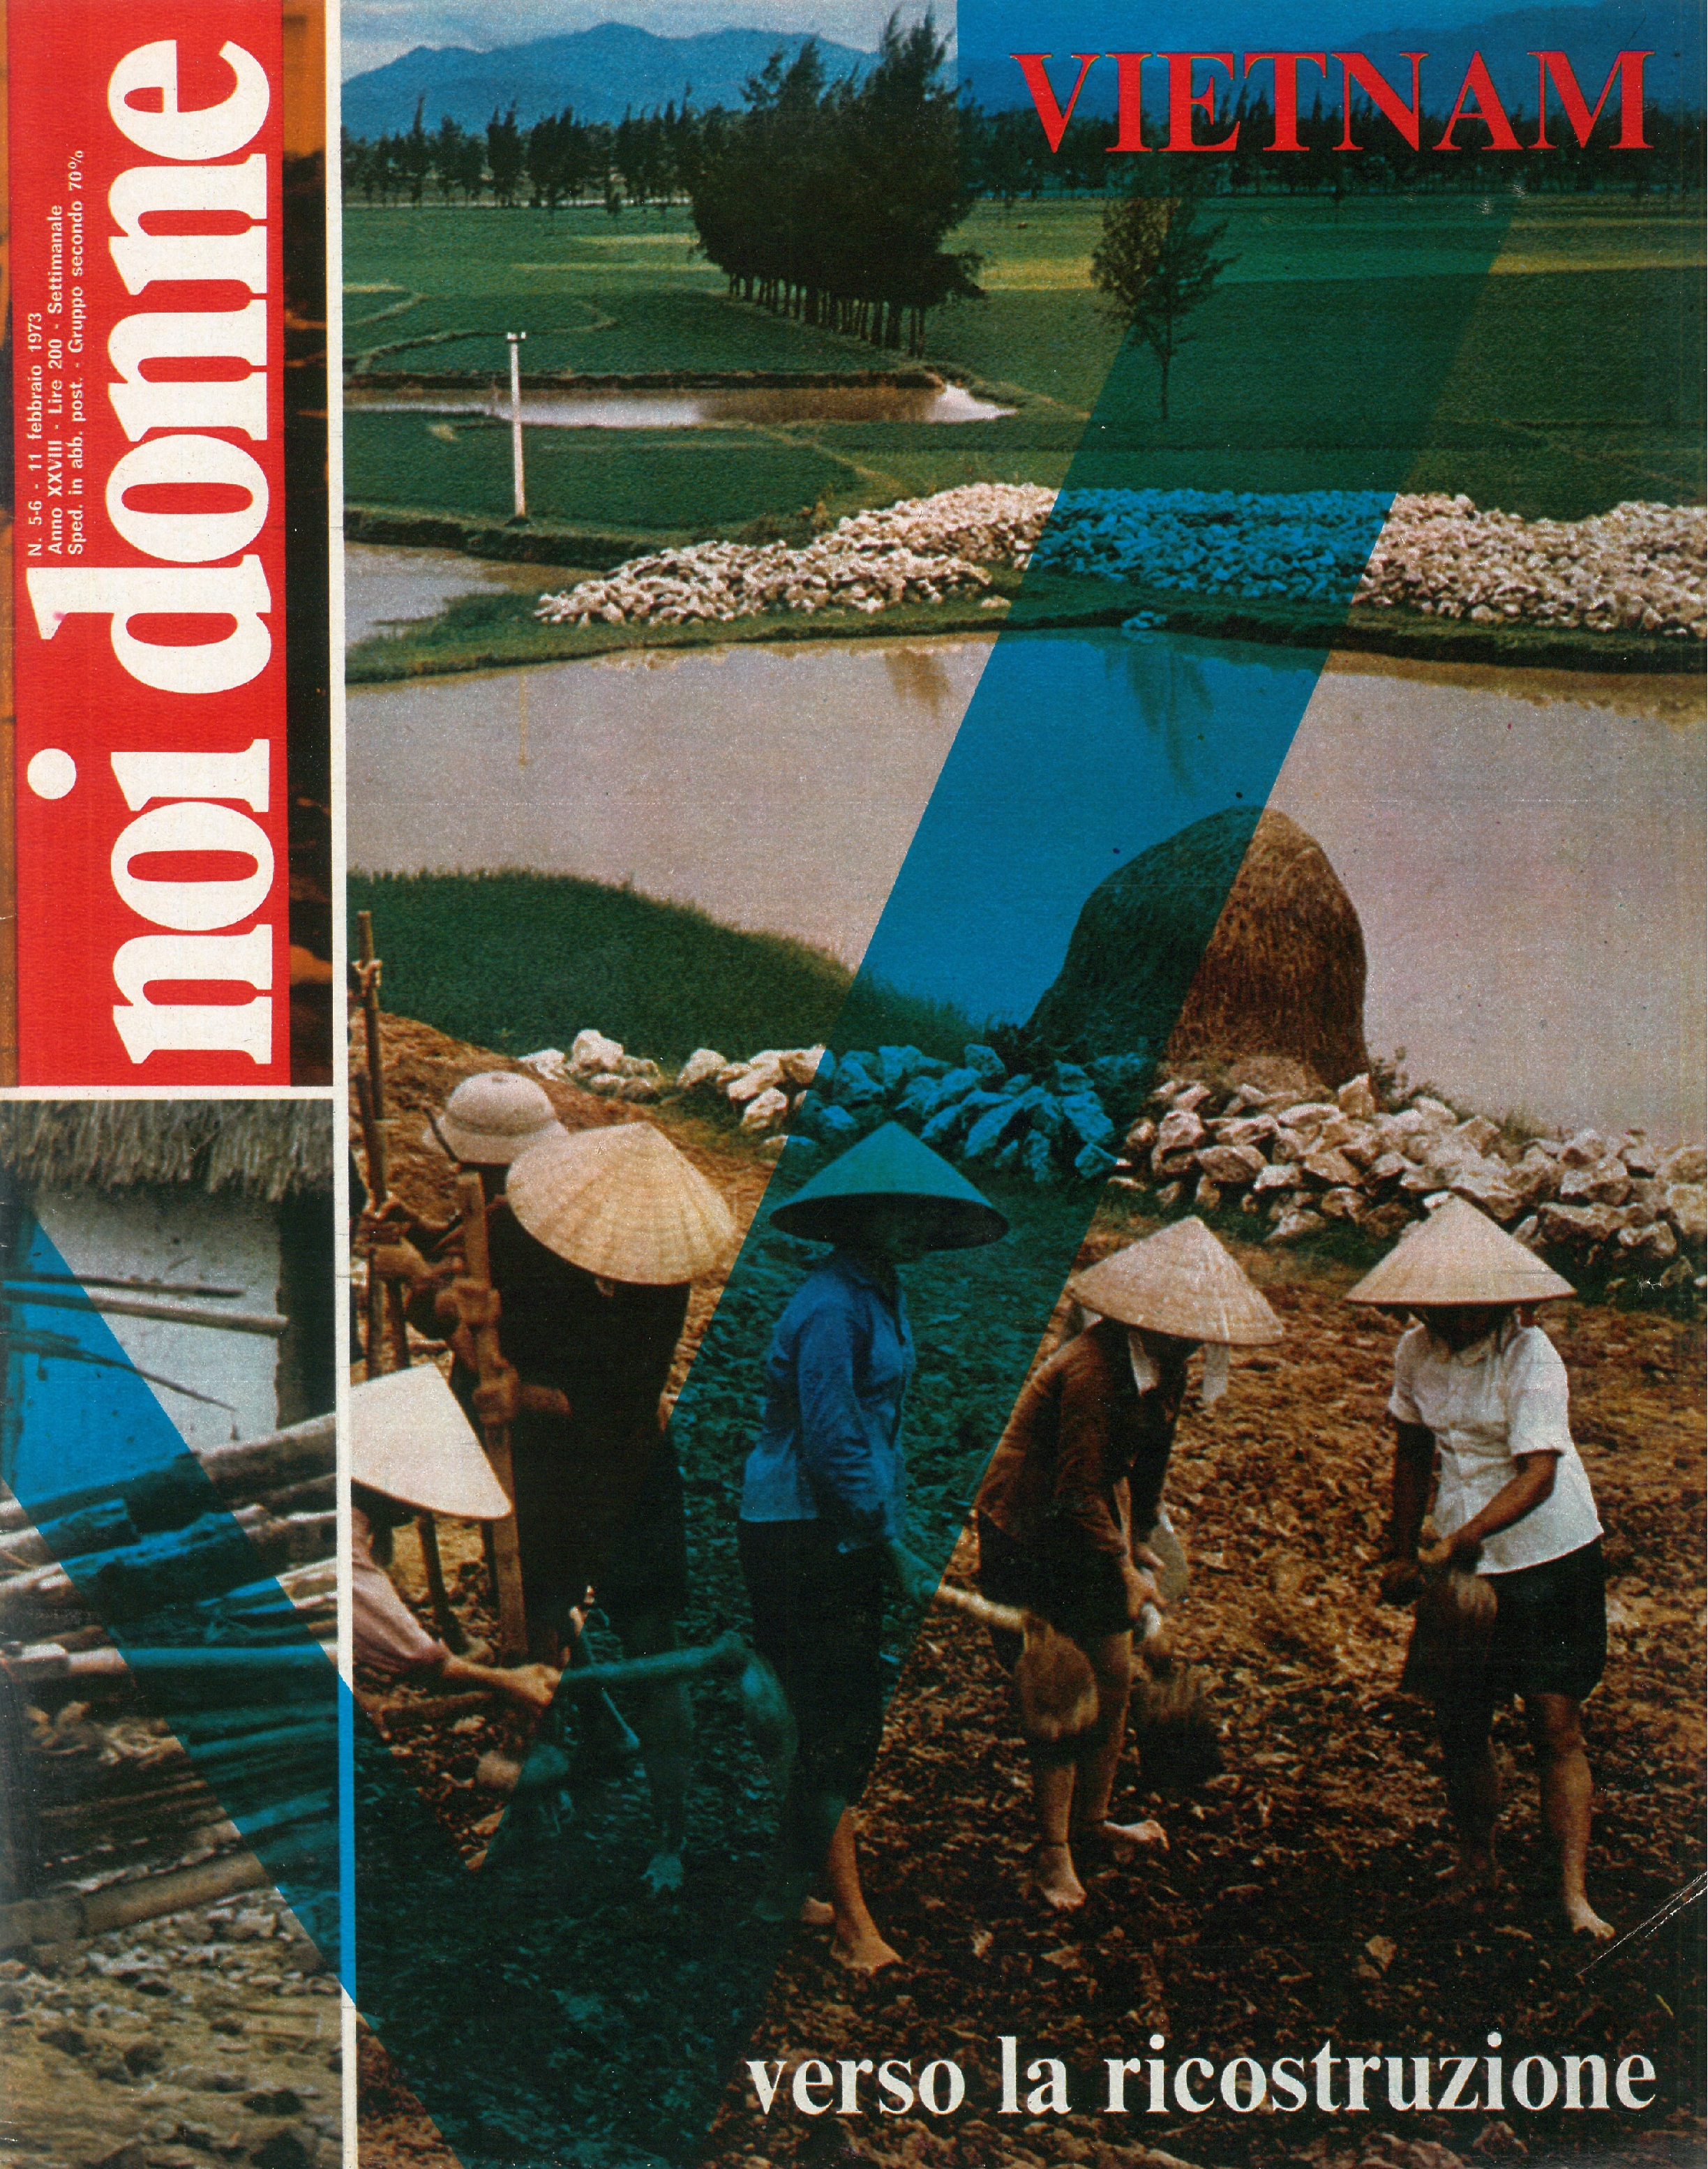 Foto: (nr 5-6) Vietnam verso la ricostruzione